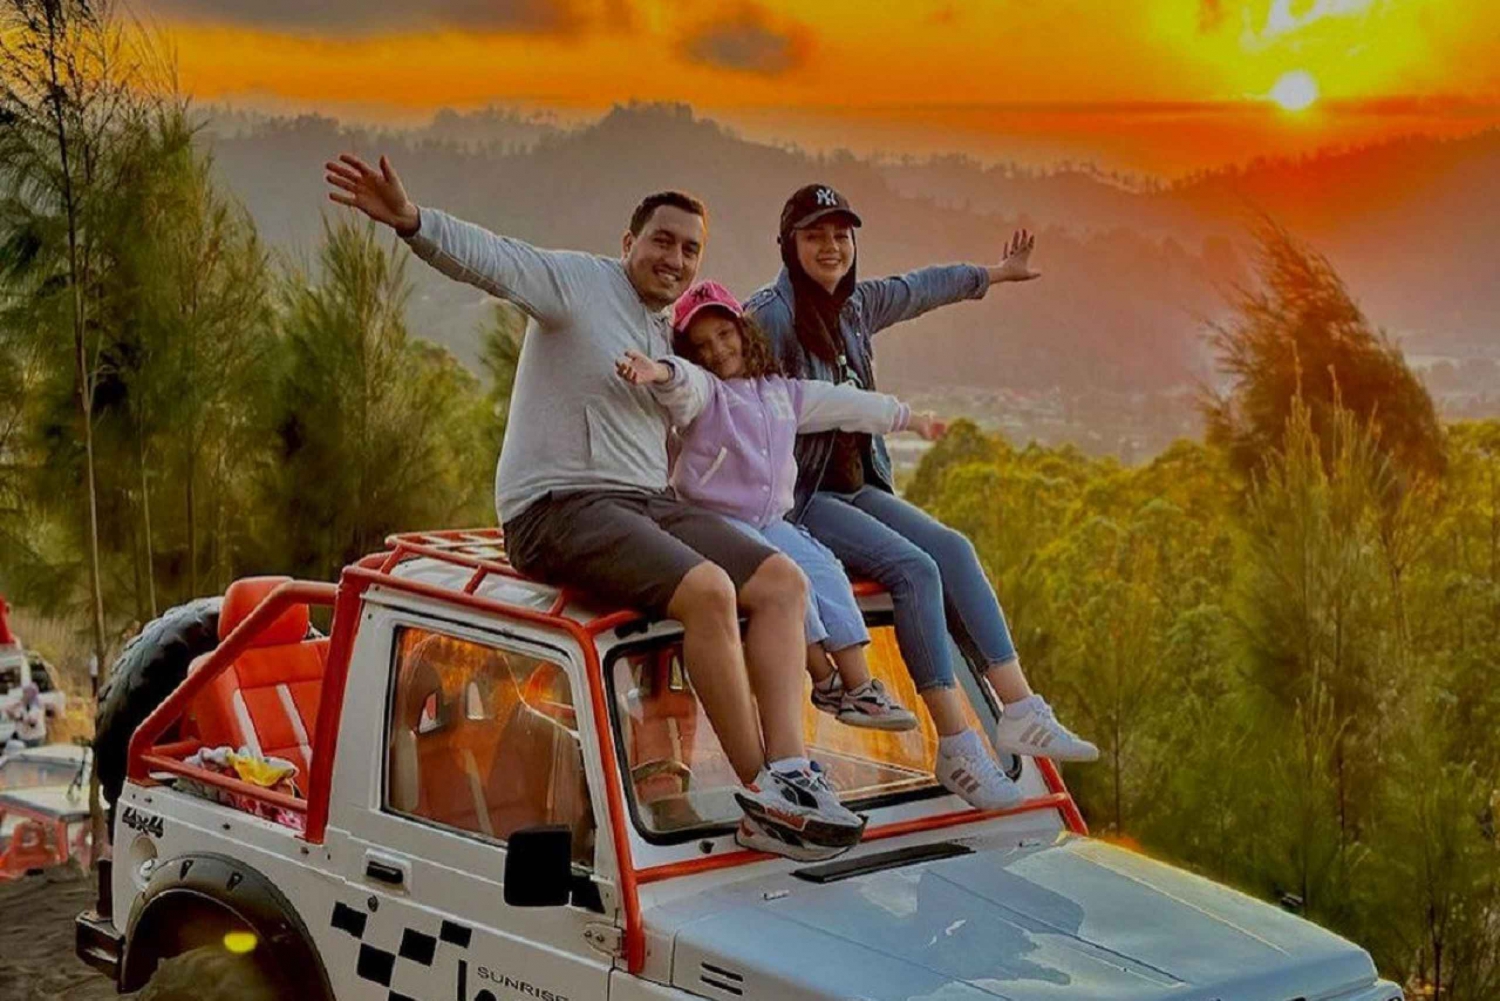 Mount Batur : Sunrise 4WD Jeep with Volcanic Lava Tour